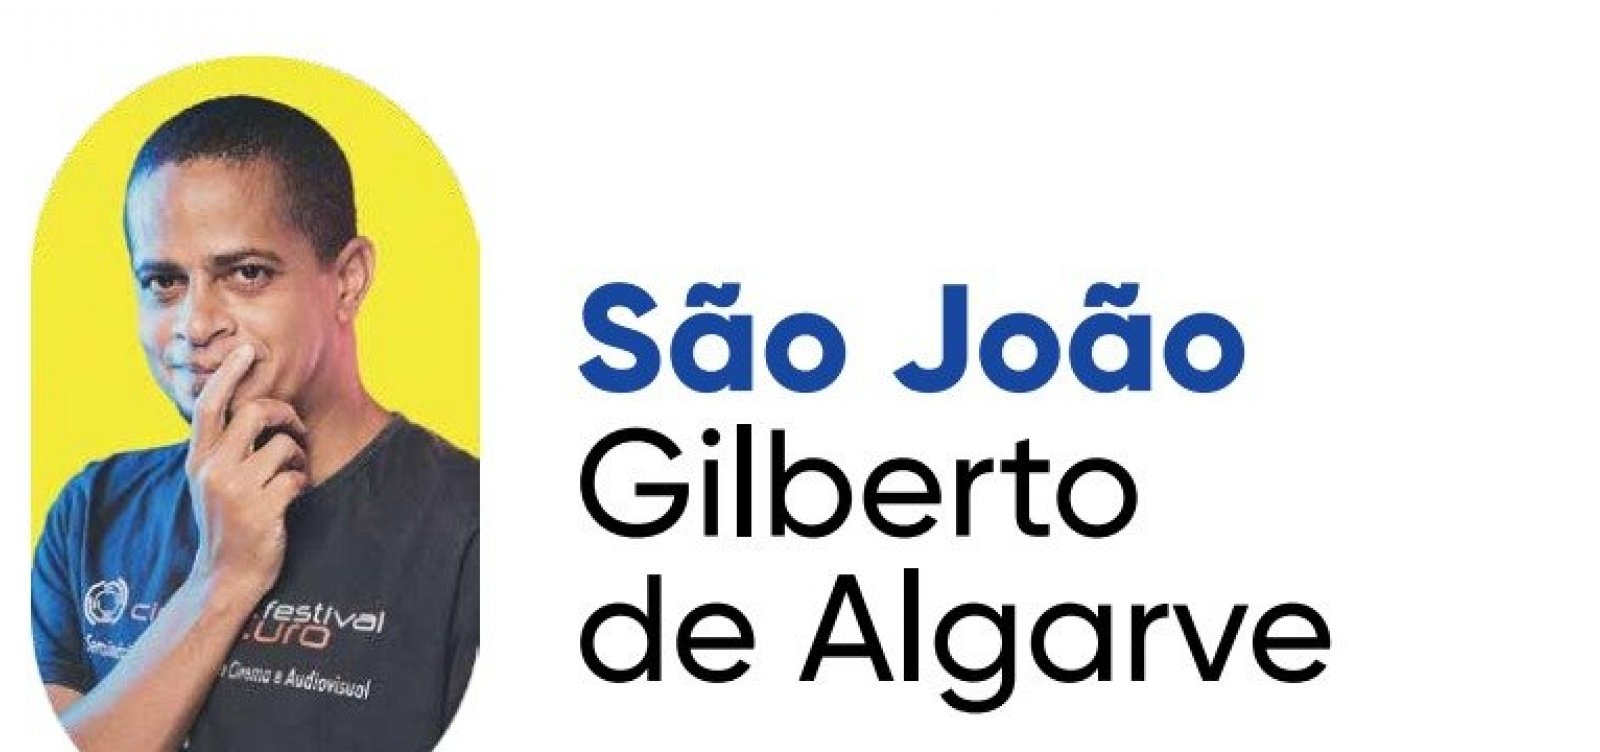 São João Gilberto de Algarve